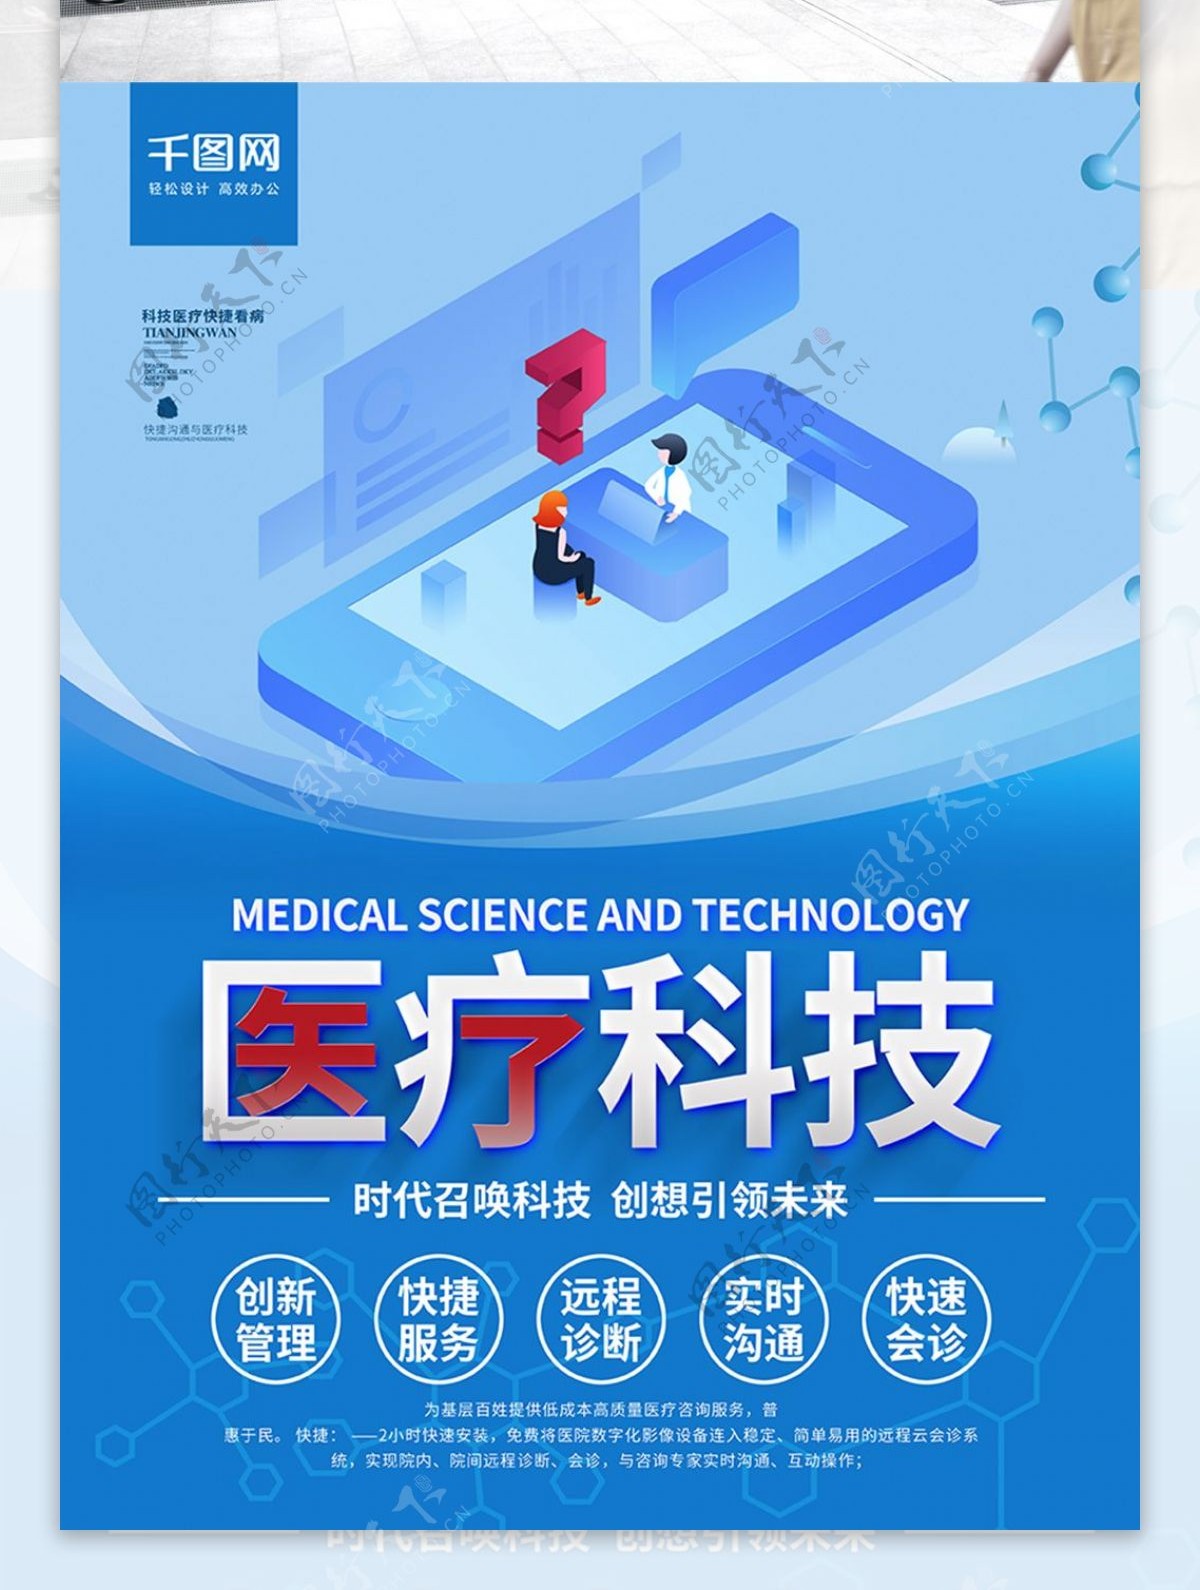 蓝色创意字体医疗科技医院宣传商业海报